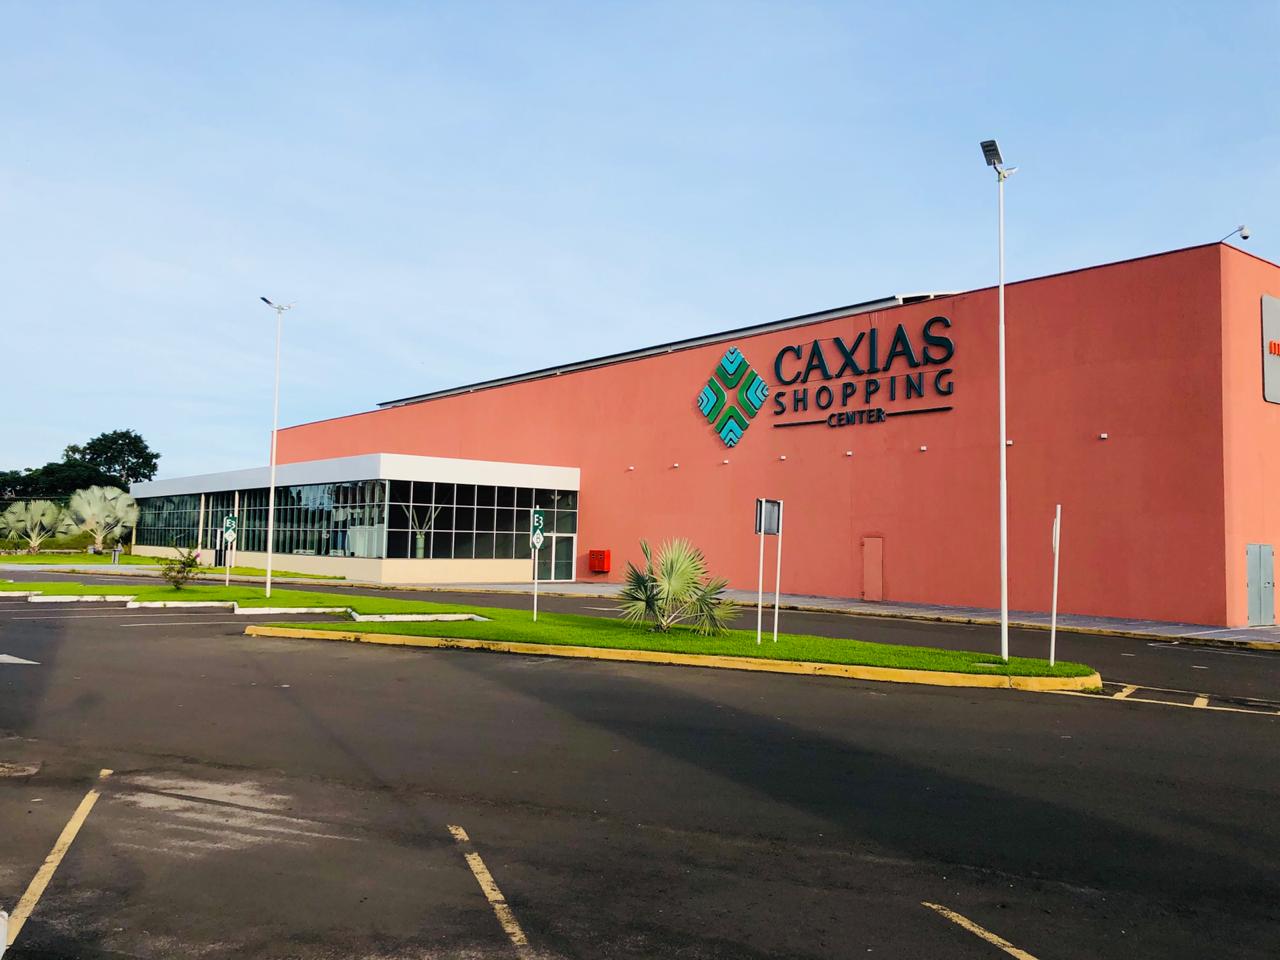 Caxias Shopping Center